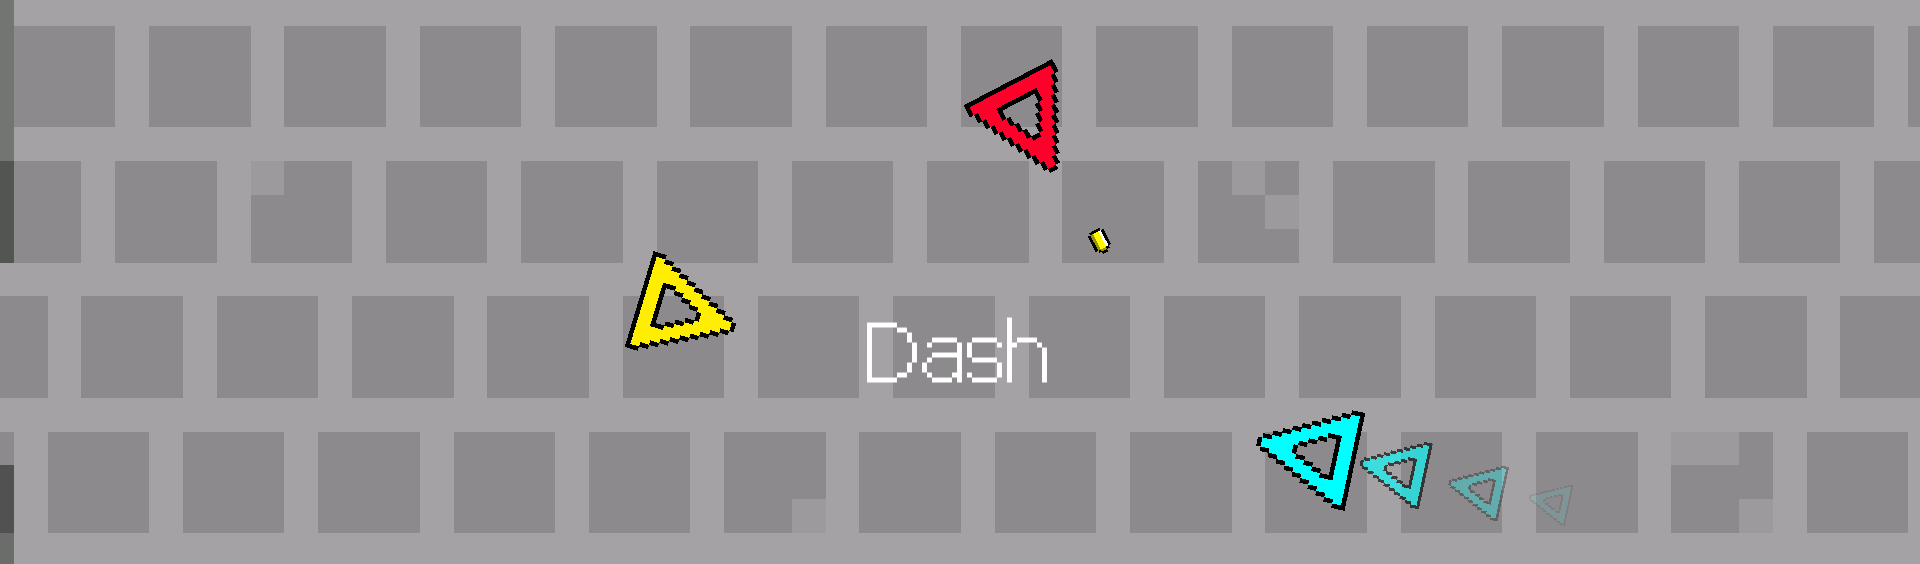 A game called Dash